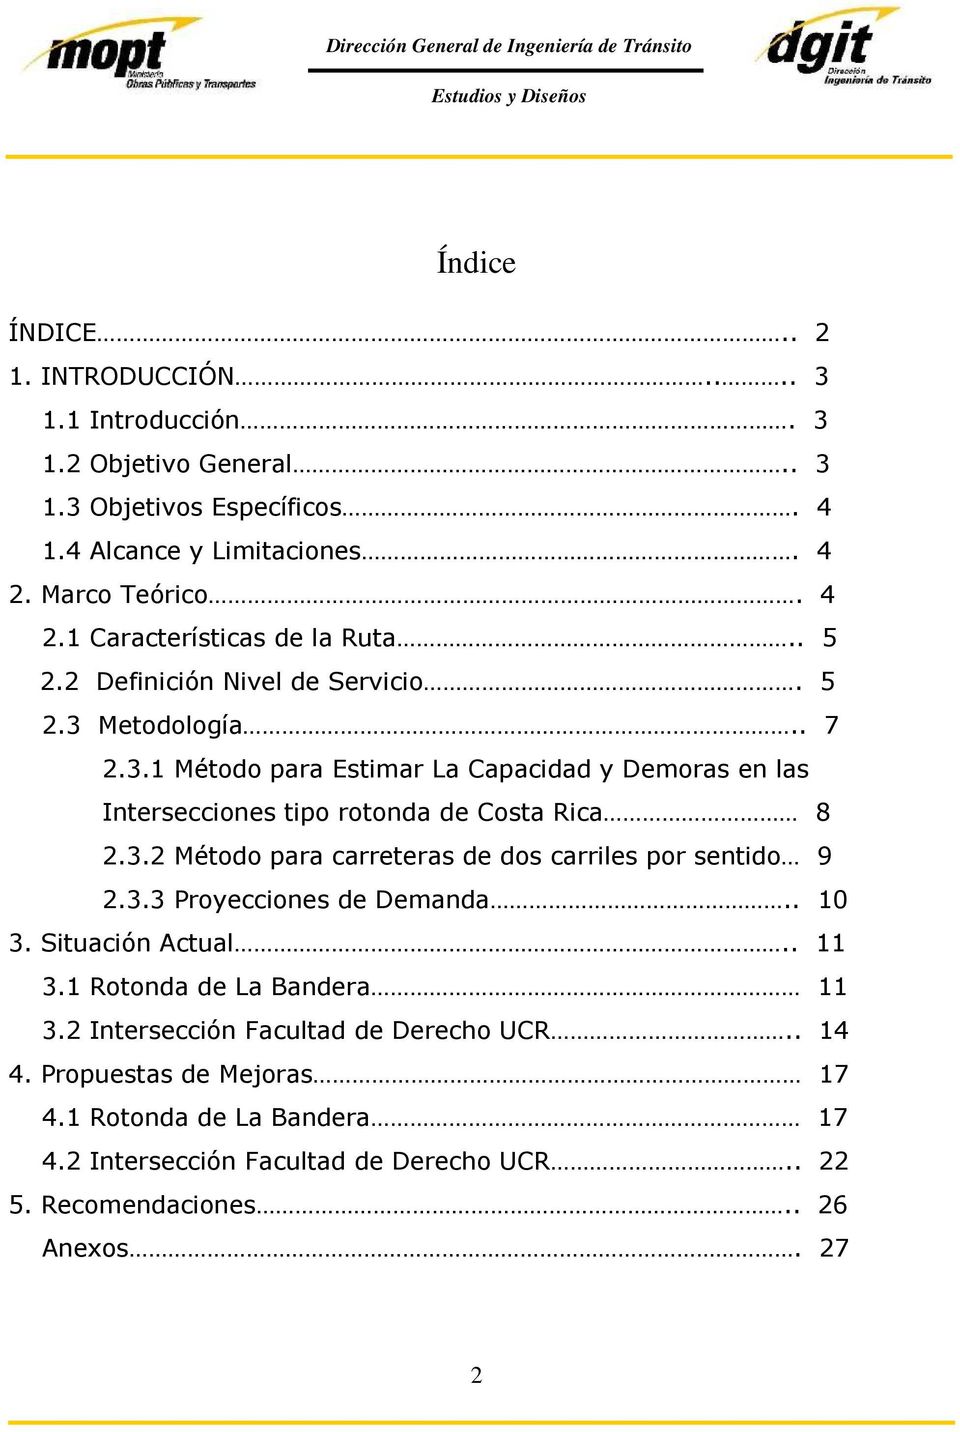 Metodología.. 7 2.3.1 Método para Estimar La Capacidad y Demoras en las Intersecciones tipo rotonda de Costa Rica 8 2.3.2 Método para carreteras de dos carriles por sentido 9 2.3.3 Proyecciones de Demanda.